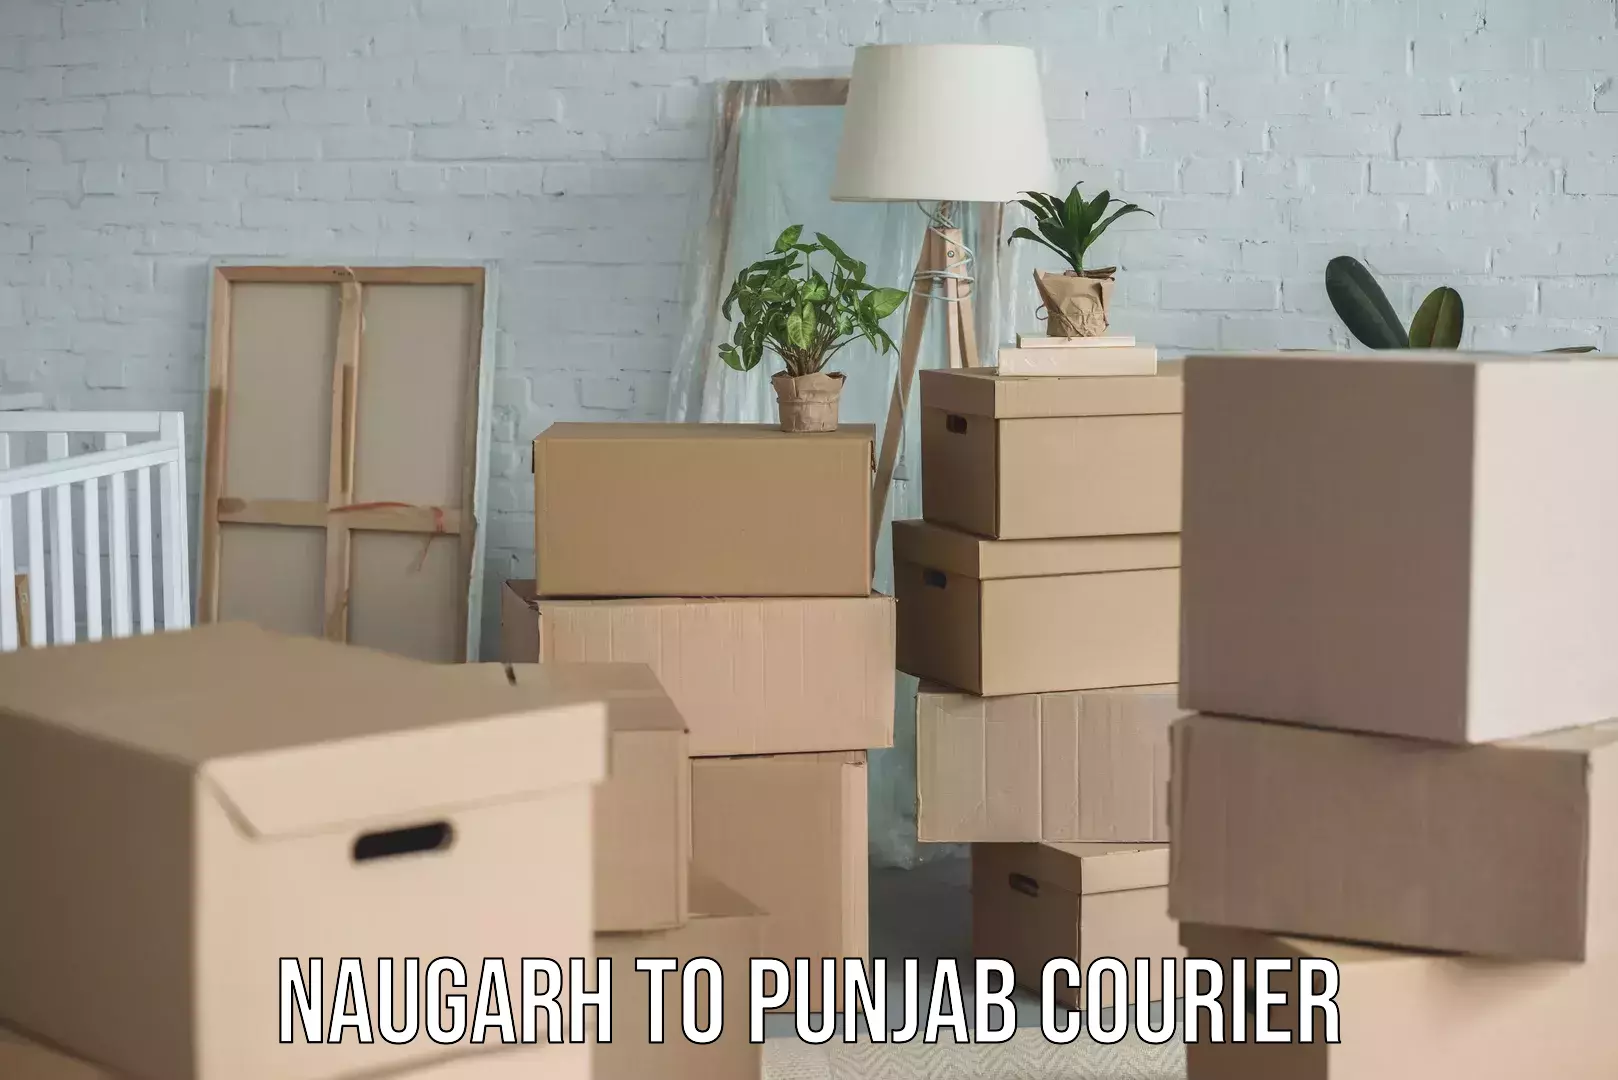 Skilled furniture transporters Naugarh to Punjab